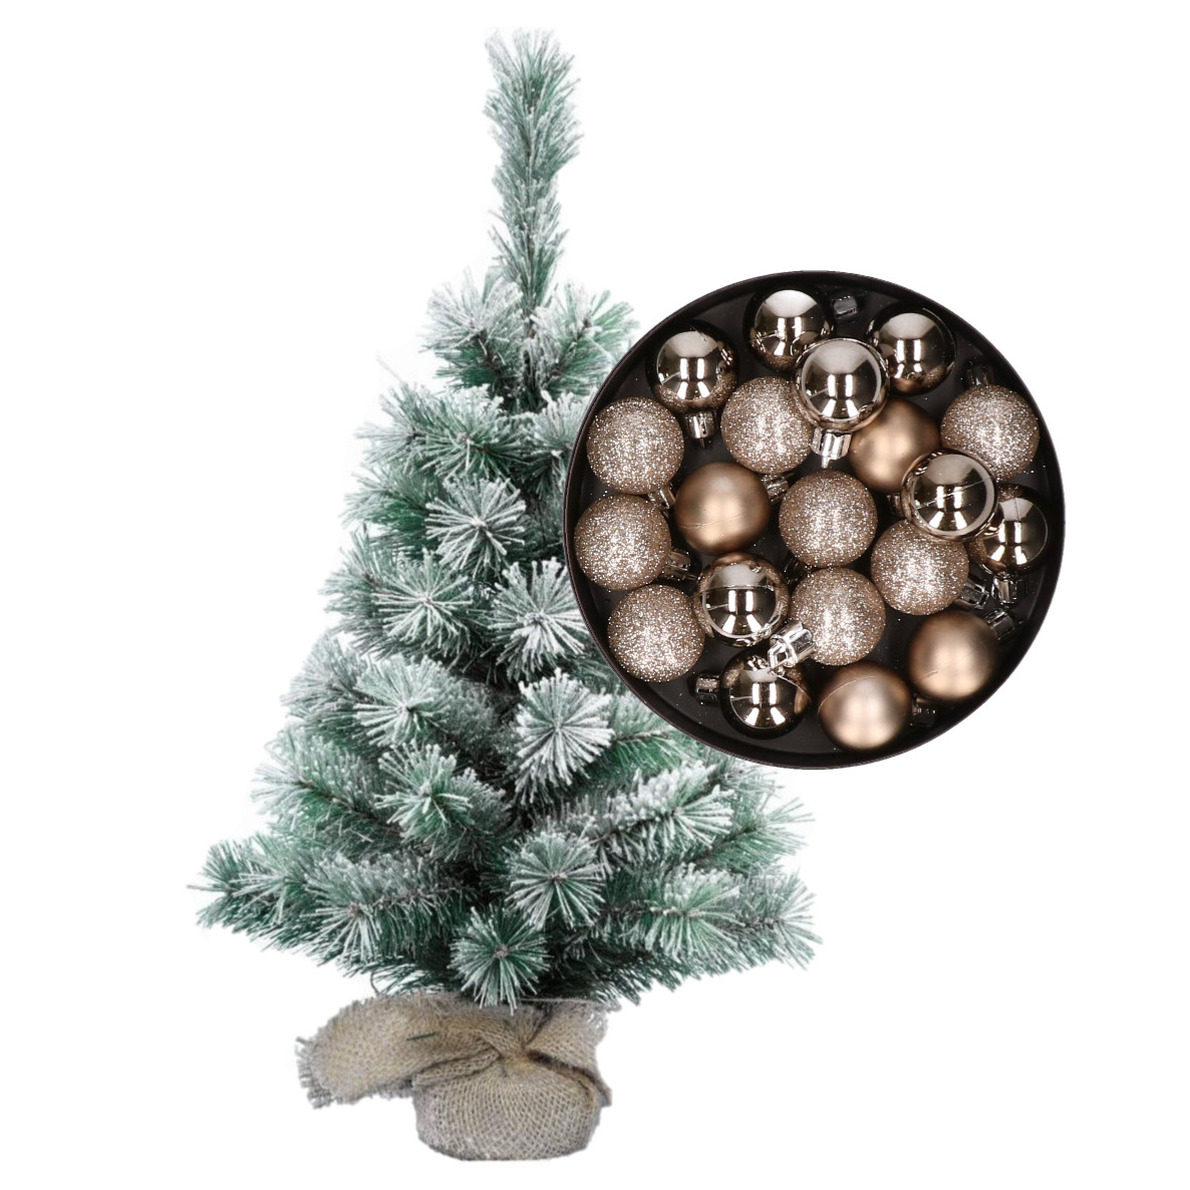 Besneeuwde mini kerstboom-kunst kerstboom 35 cm met kerstballen champagne